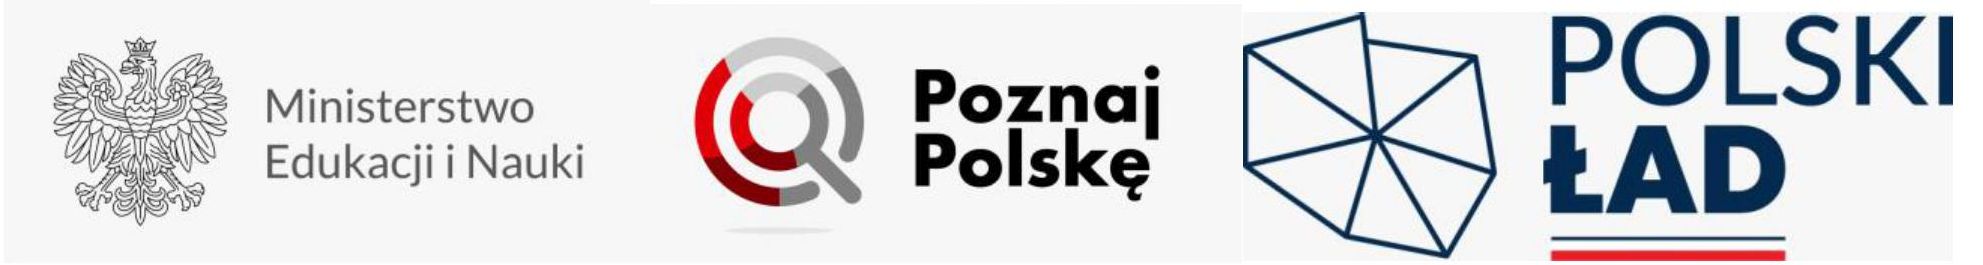 logo poznaj Polskęlogo na stronę